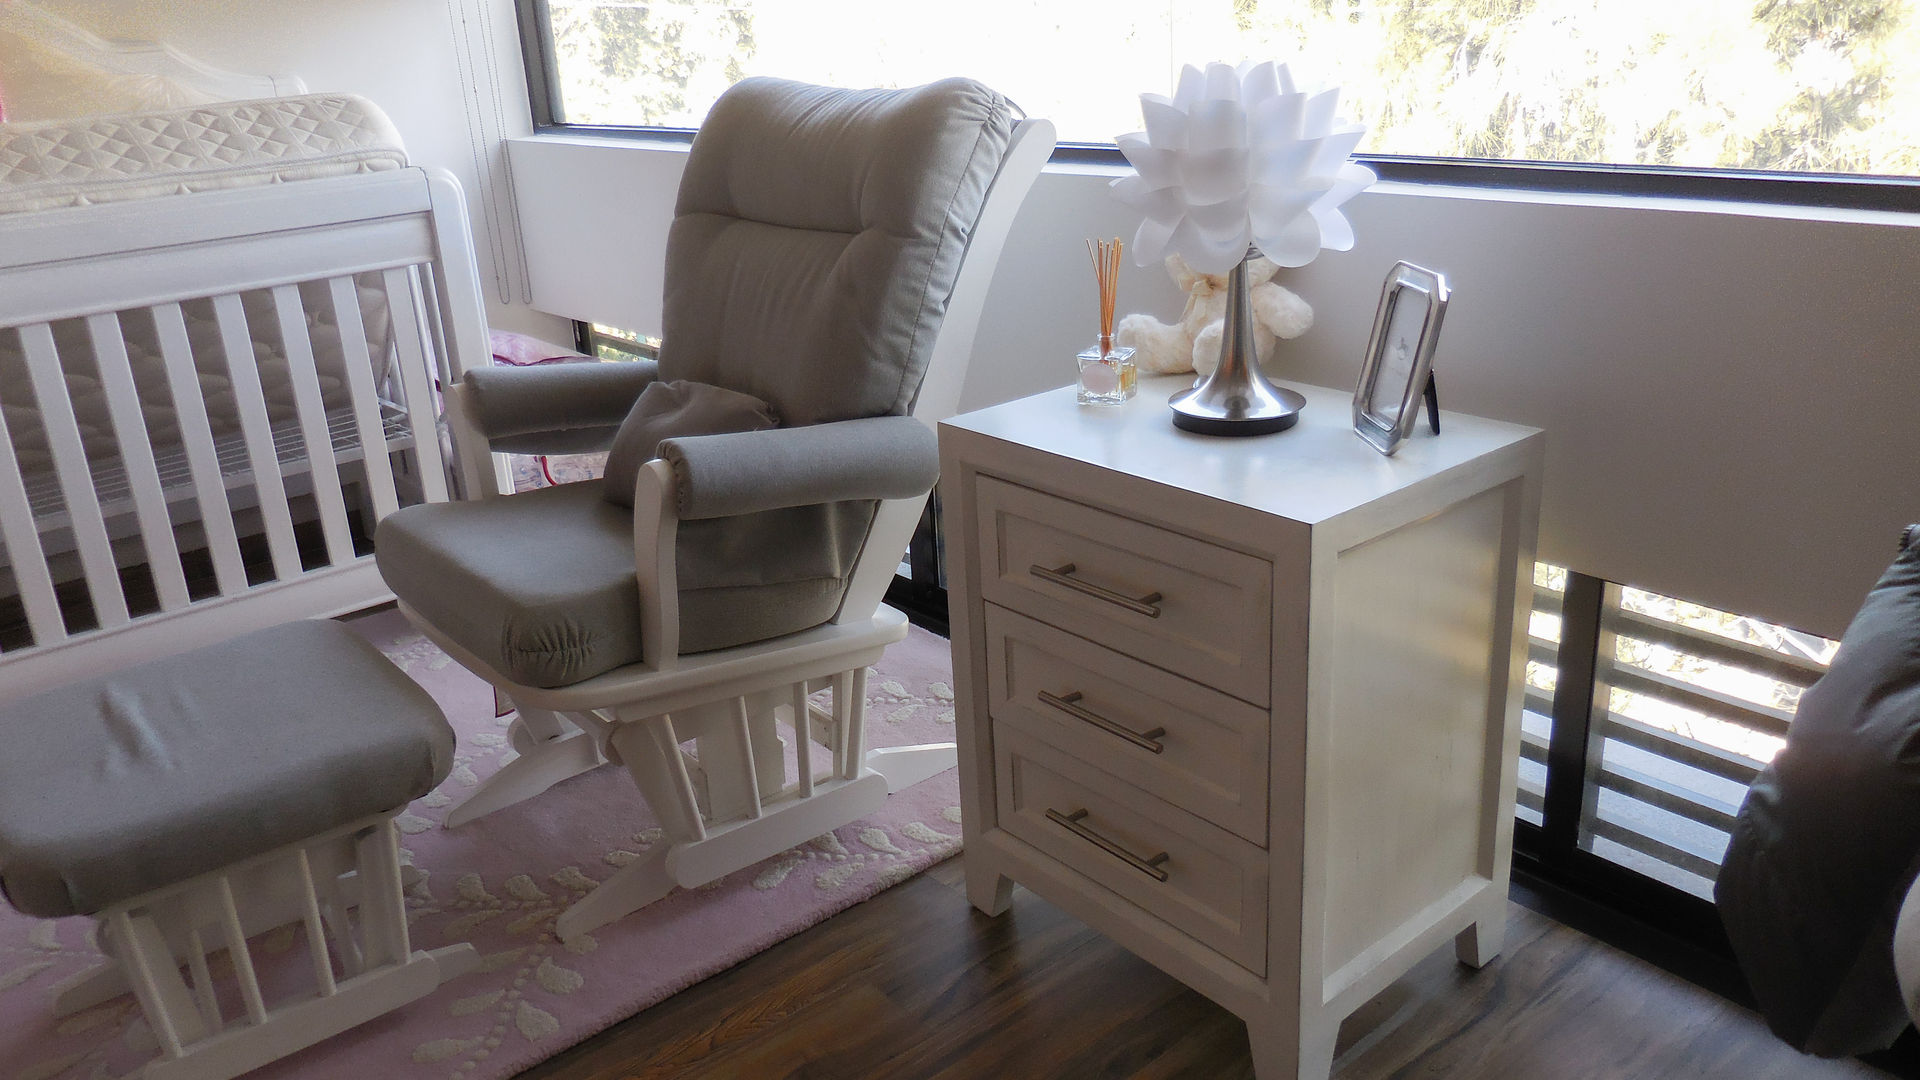 El estilo clásico del mueble adaptado a un espacio para bebés Espacio M Recámaras para bebés Madera Acabado en madera muebles,bebes,buró,mecedora,lámpara,blanco,recámara,espacio m